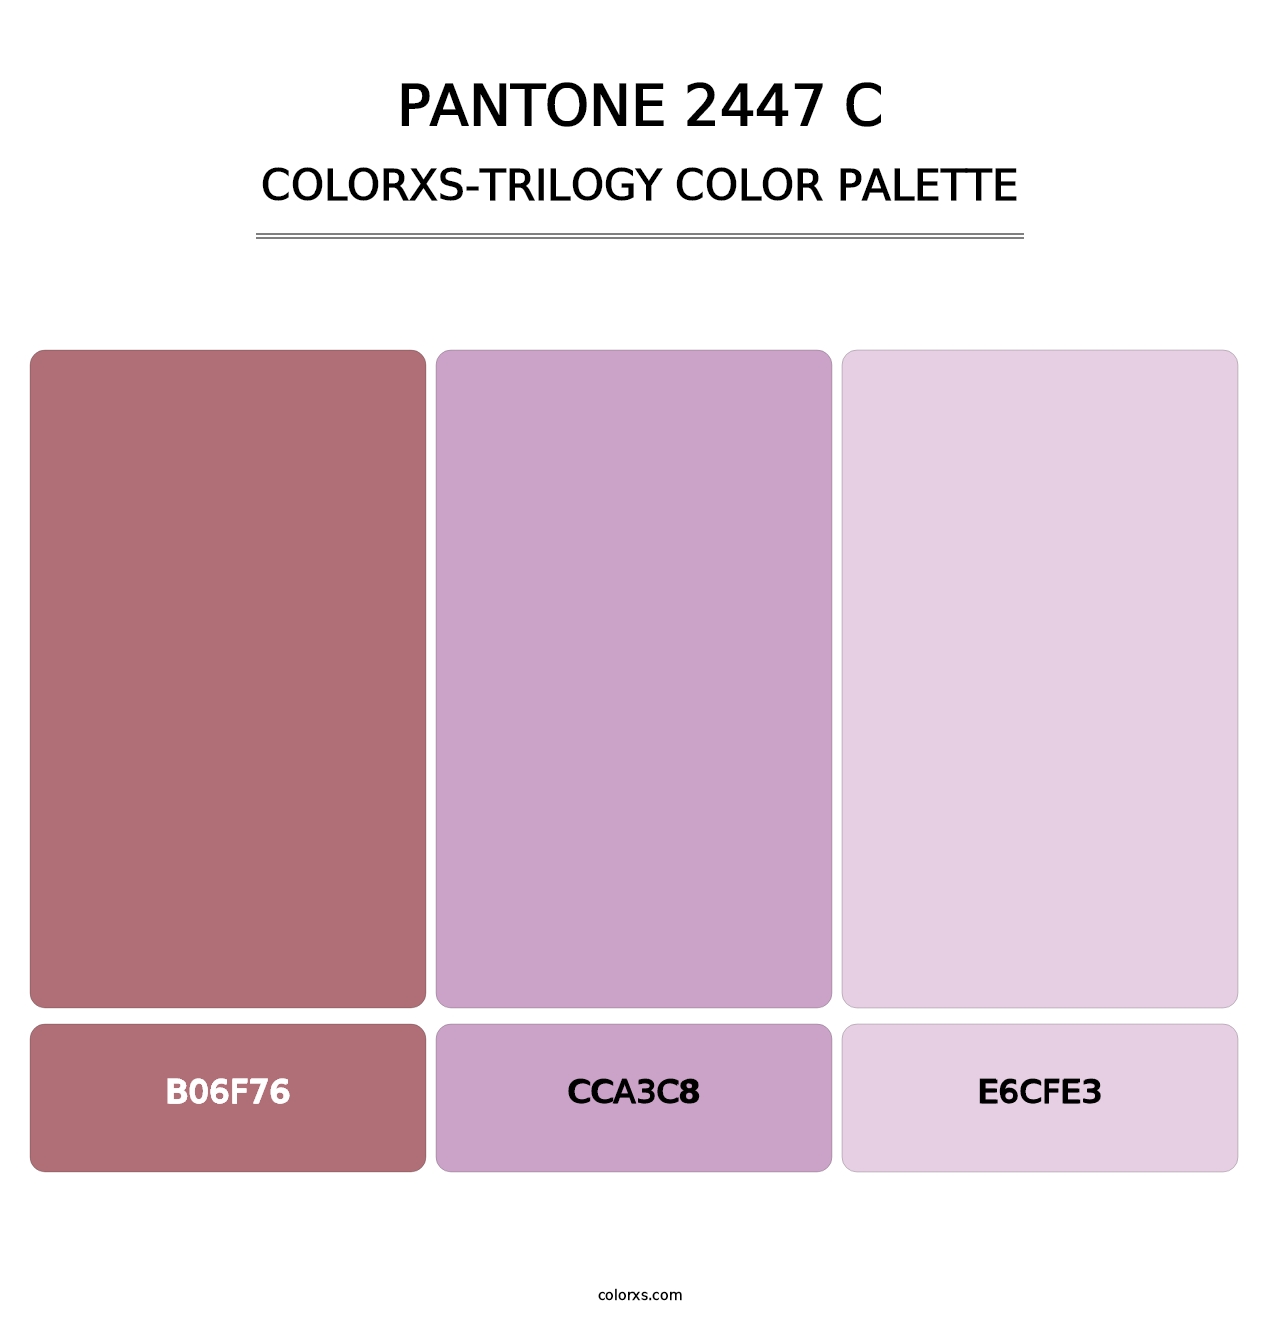 PANTONE 2447 C - Colorxs Trilogy Palette